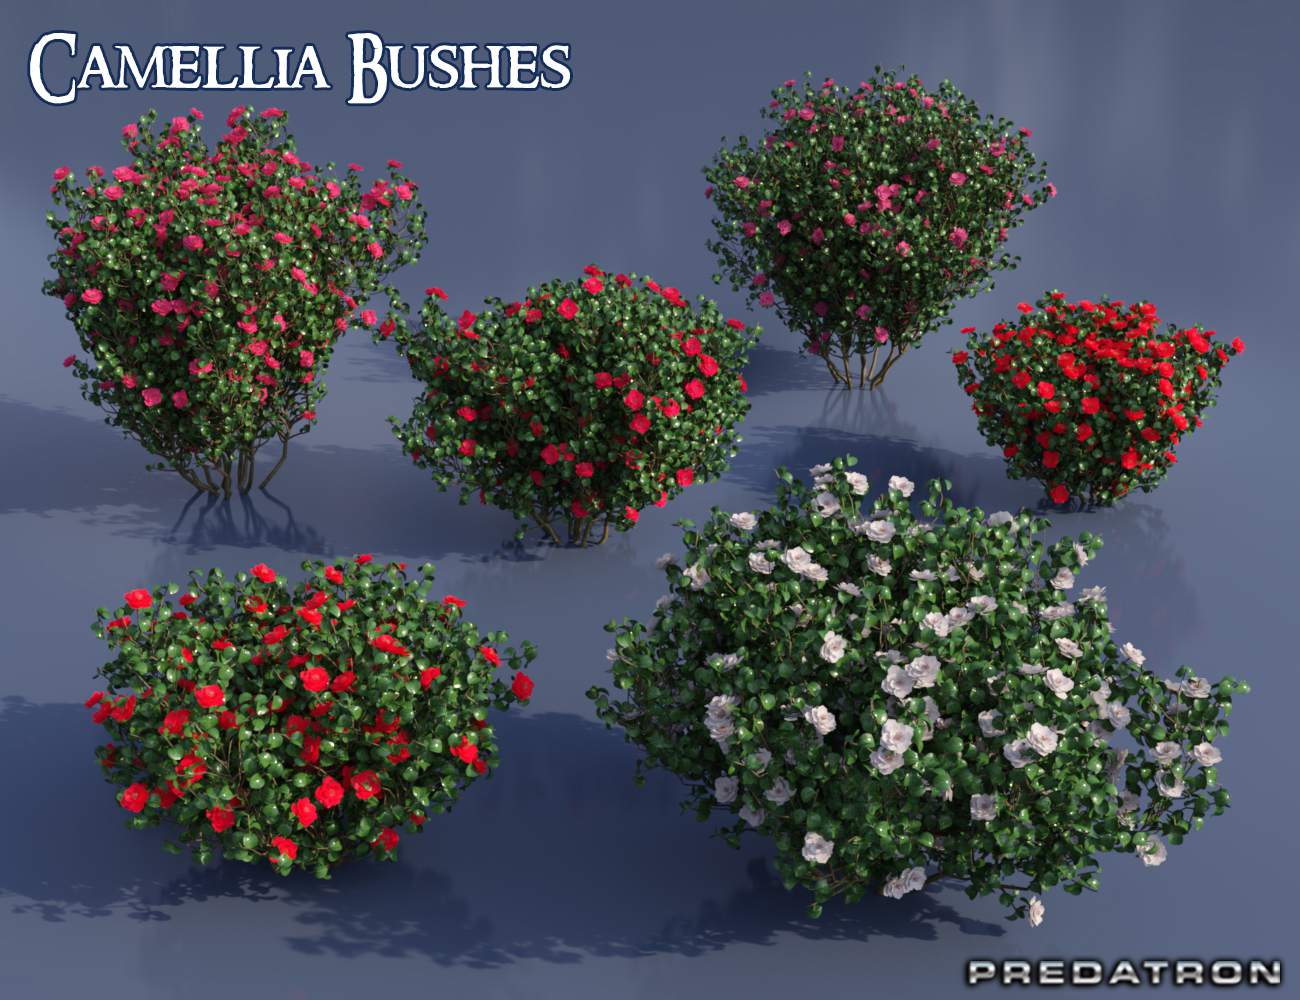 Predatron Camellia Bushes by: Predatron, 3D Models by Daz 3D